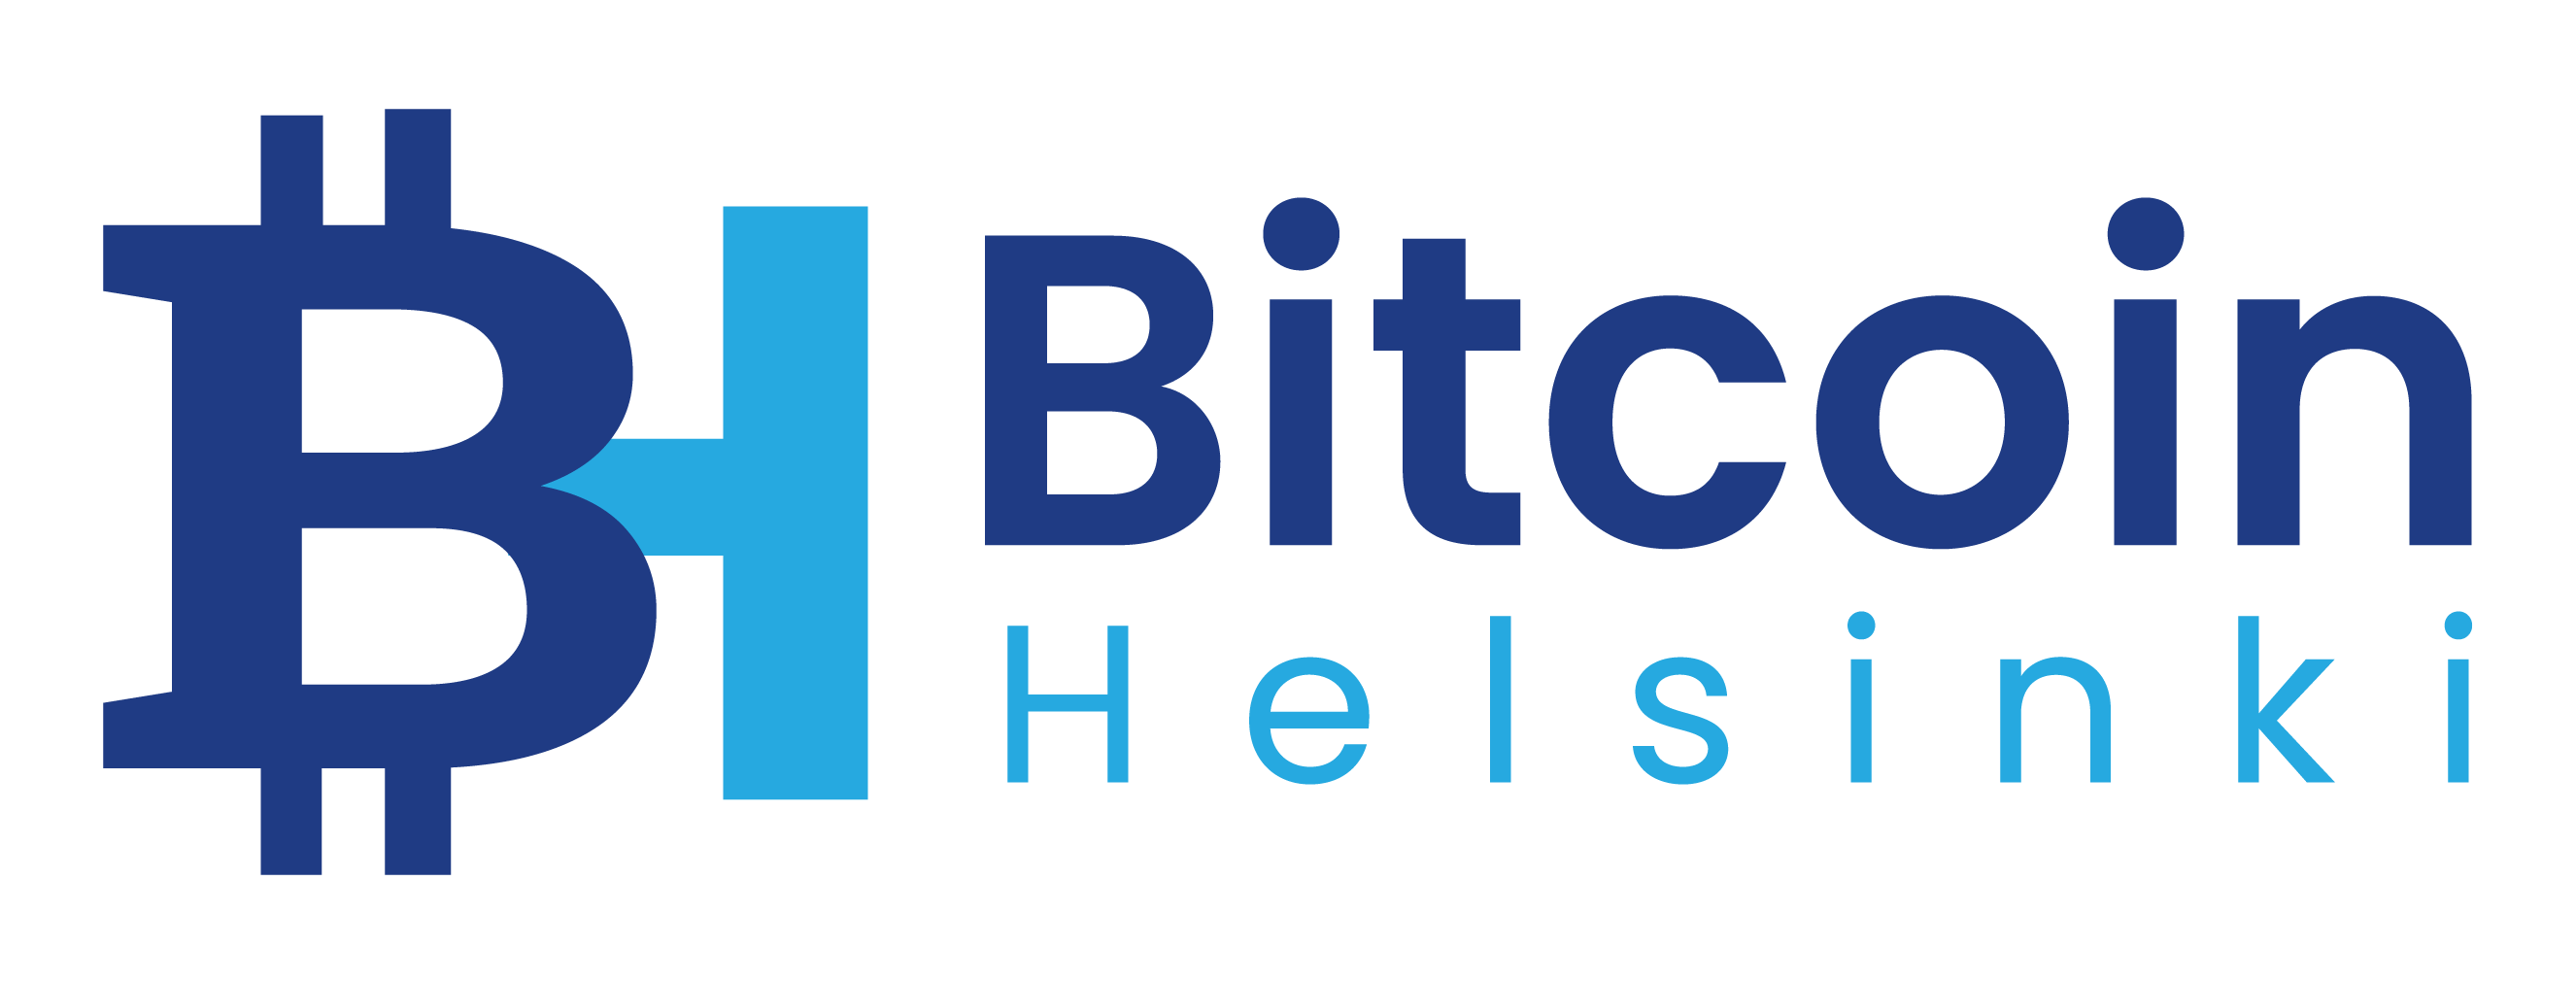 Bitcoin Helsinki - Är du inte en del av Bitcoin Helsinki-communityn än?